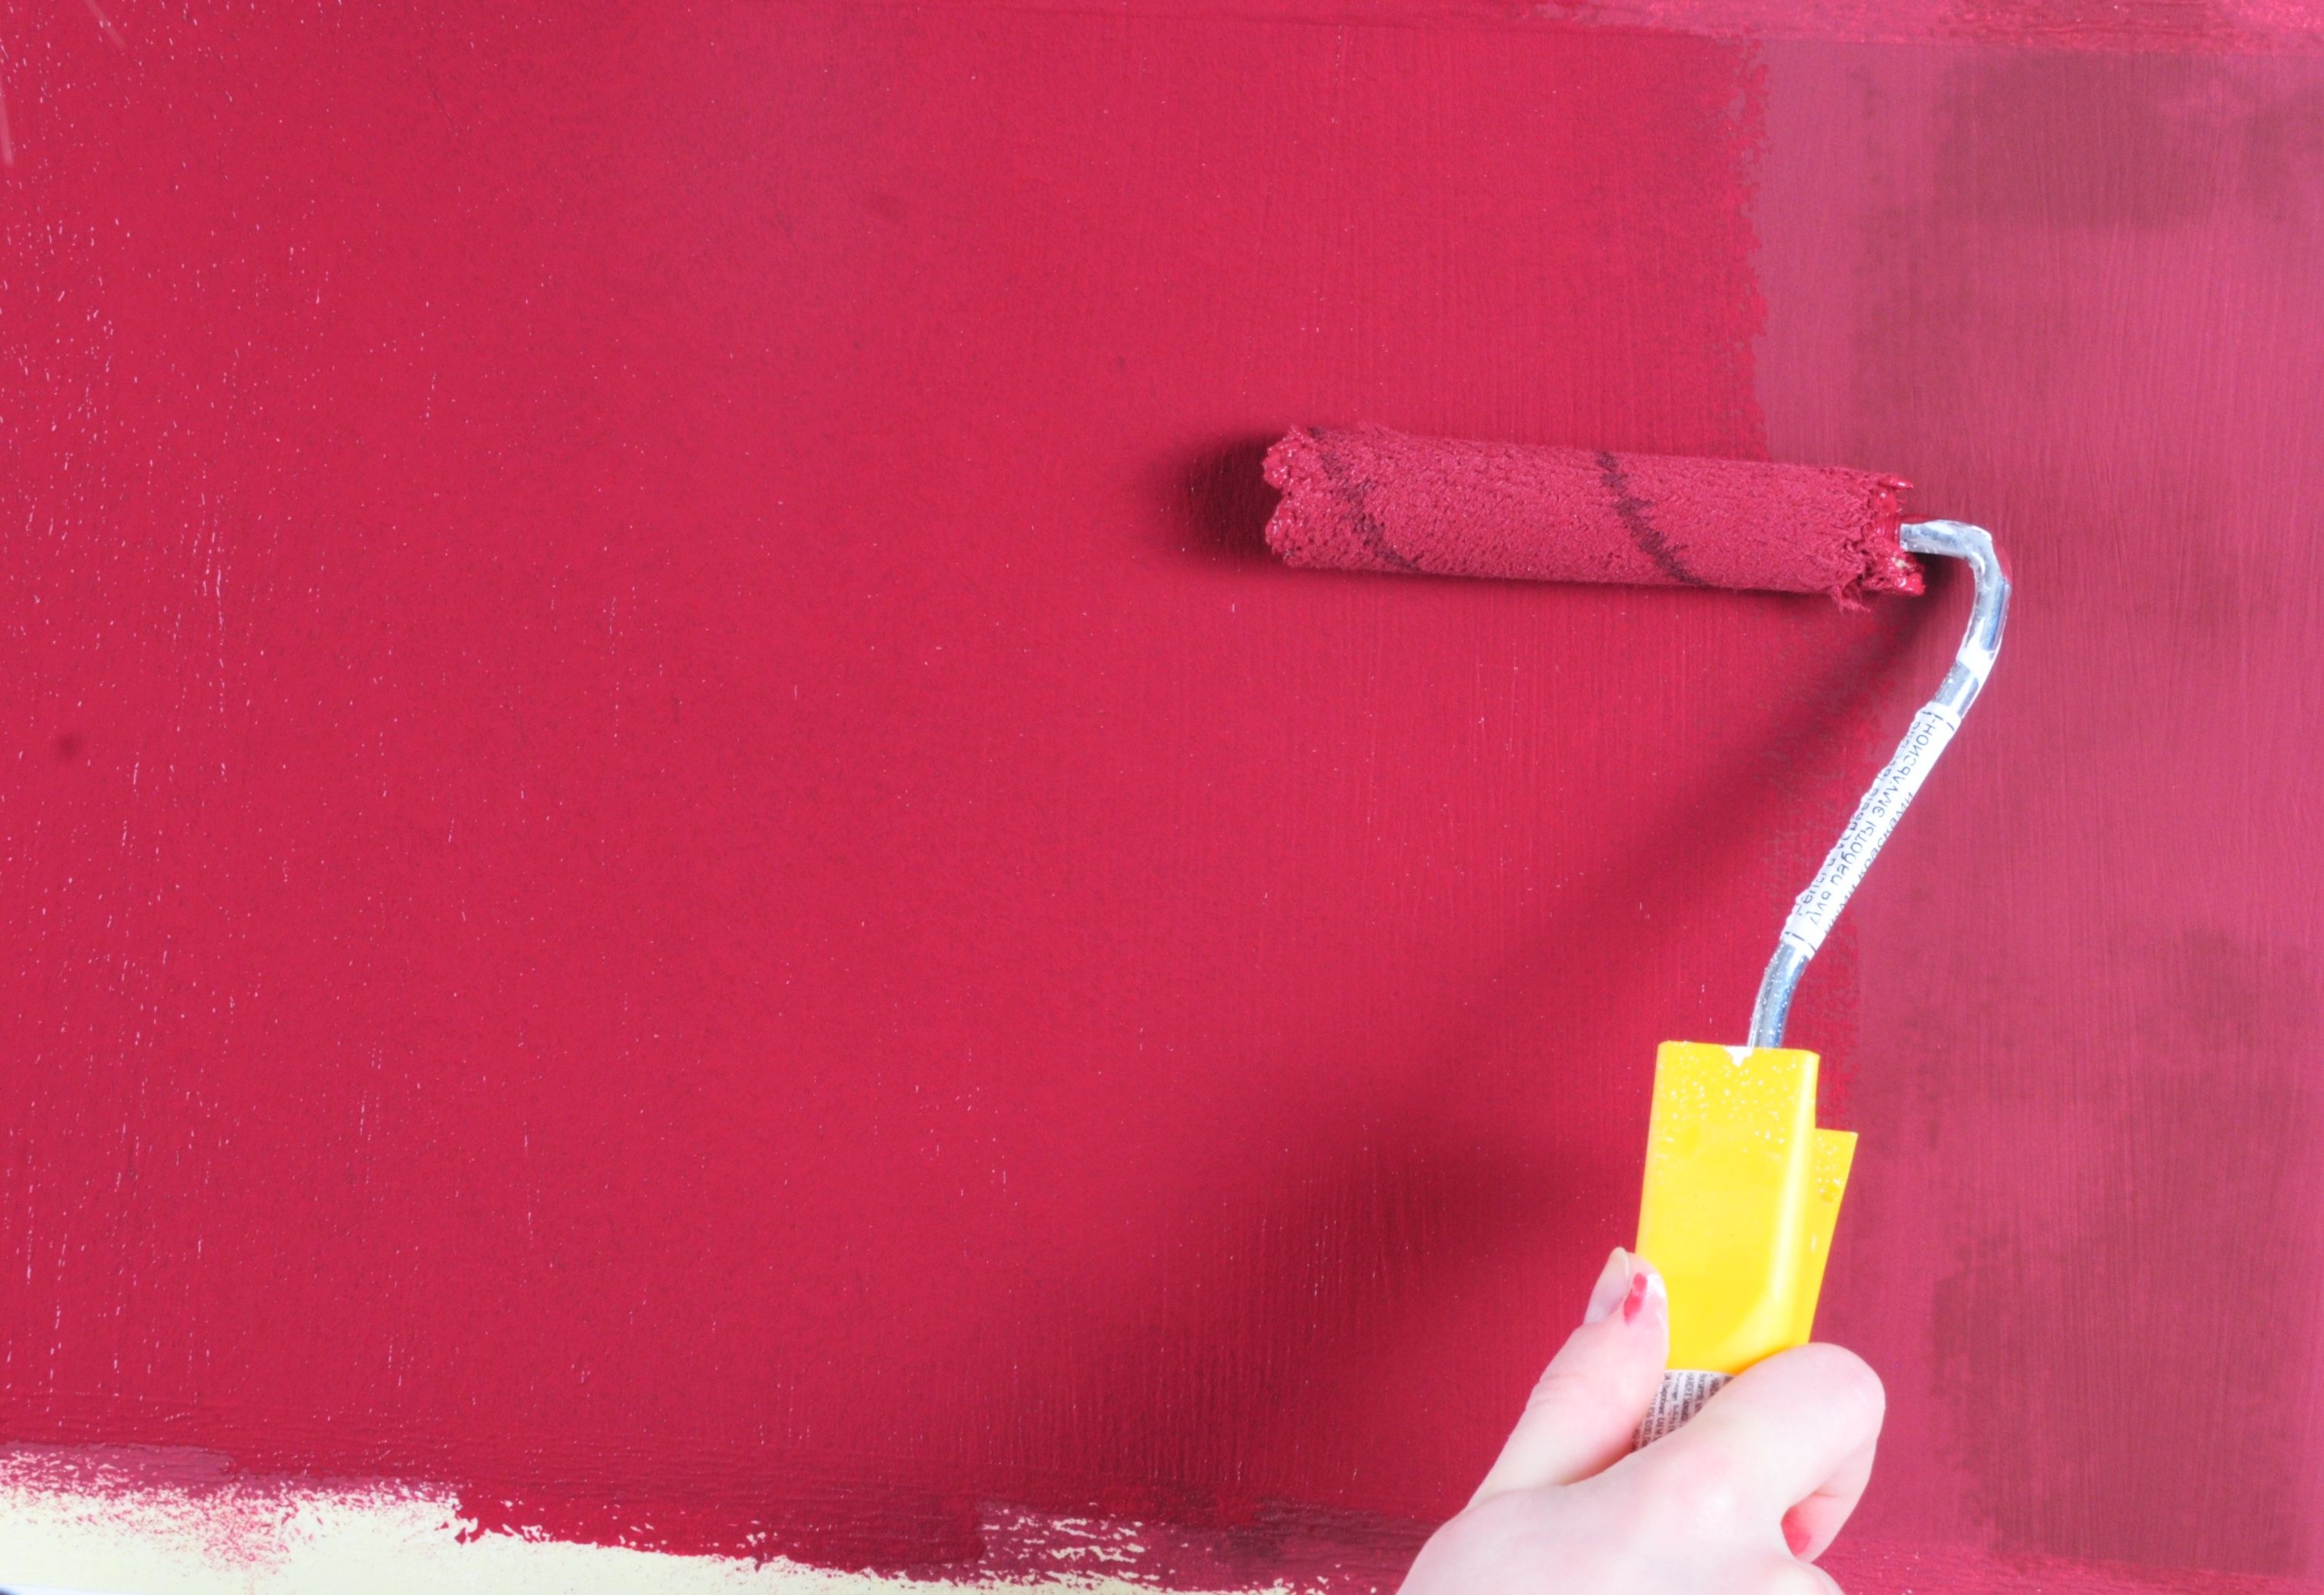 Как самостоятельно покрасить обои под покраску. Валик для водоэмульсионной краски для стен. Стены Покрашенные водоэмульсионной. Стены покрашены водоэмульсионной краской. Валик для покраски стен.